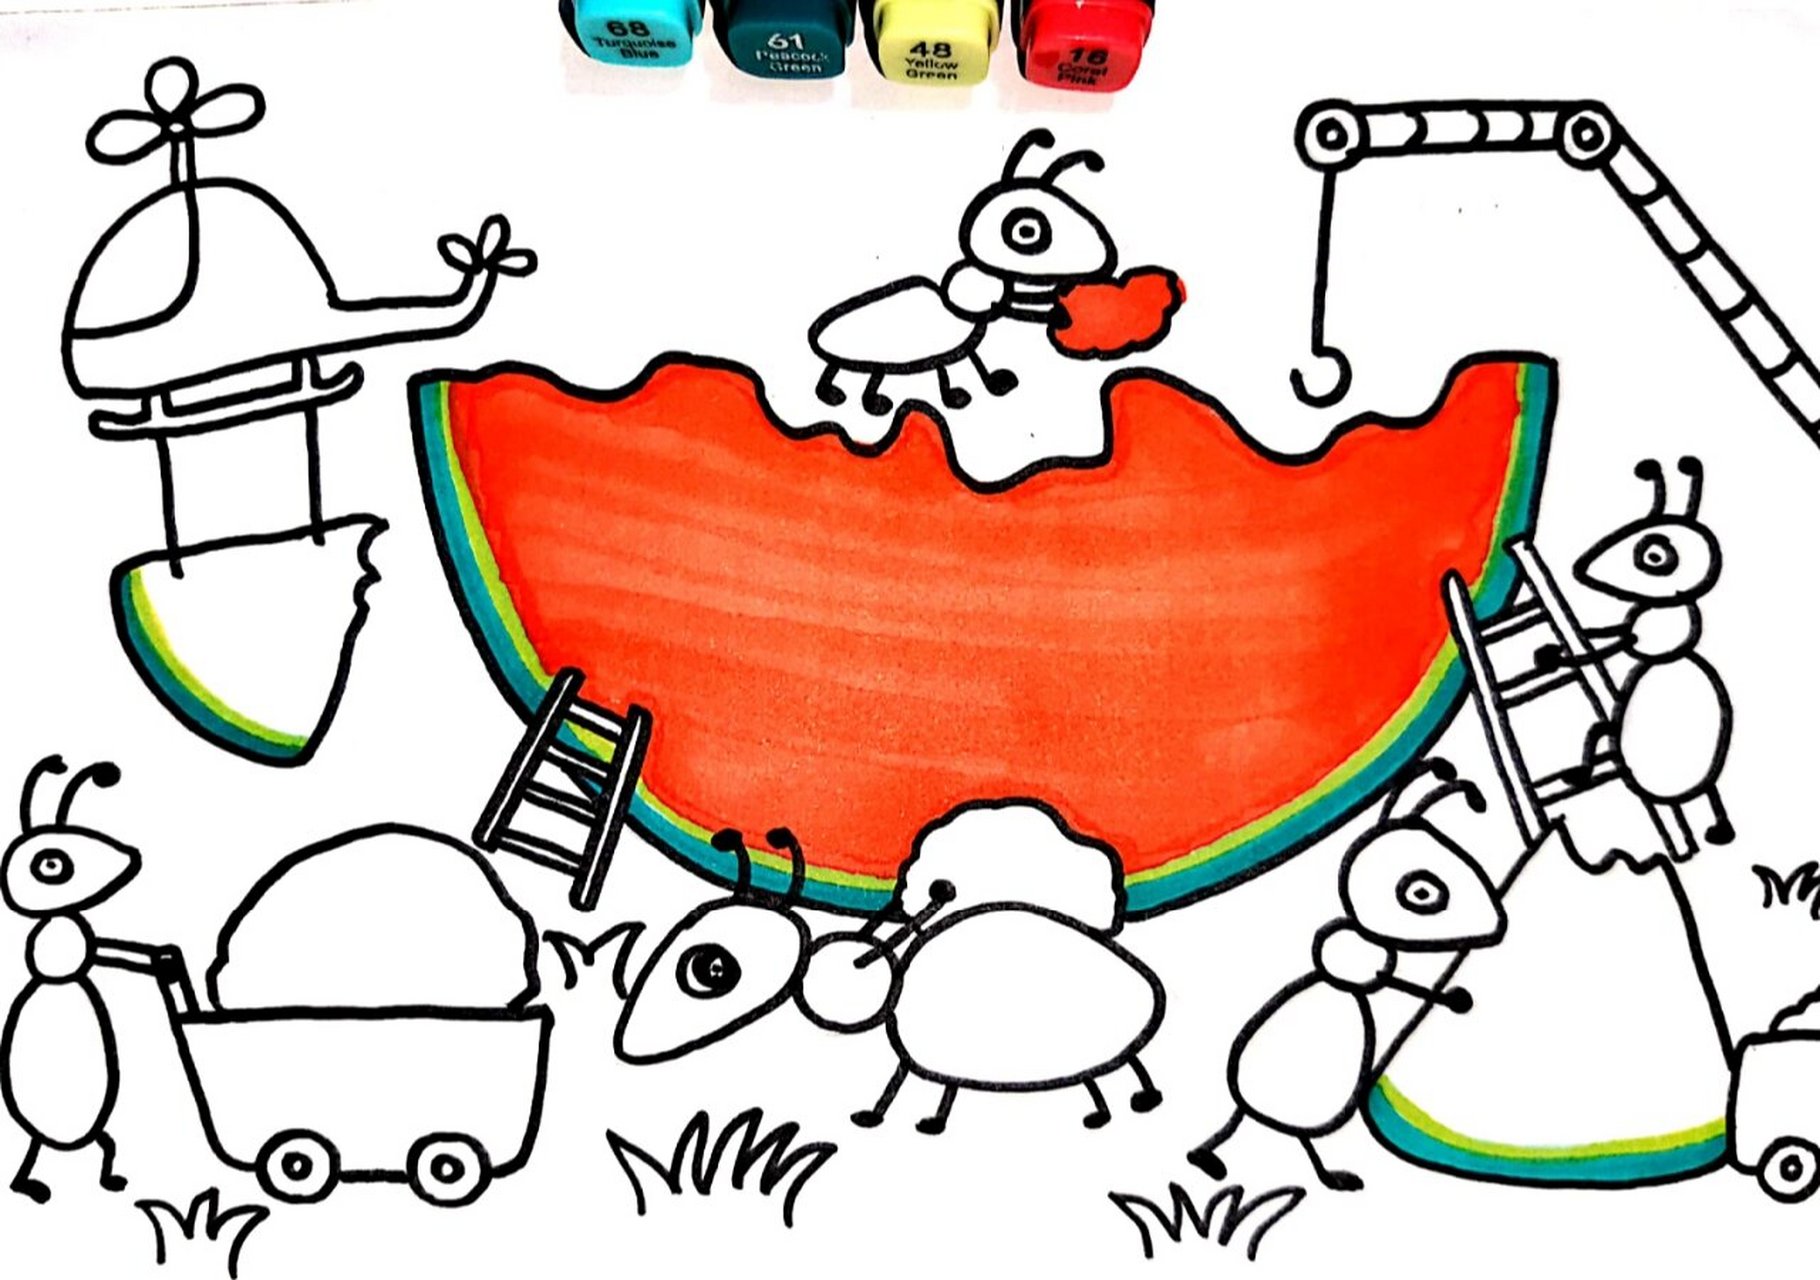 蚂蚁搬西瓜 创意儿童画 简笔画 马克笔手绘